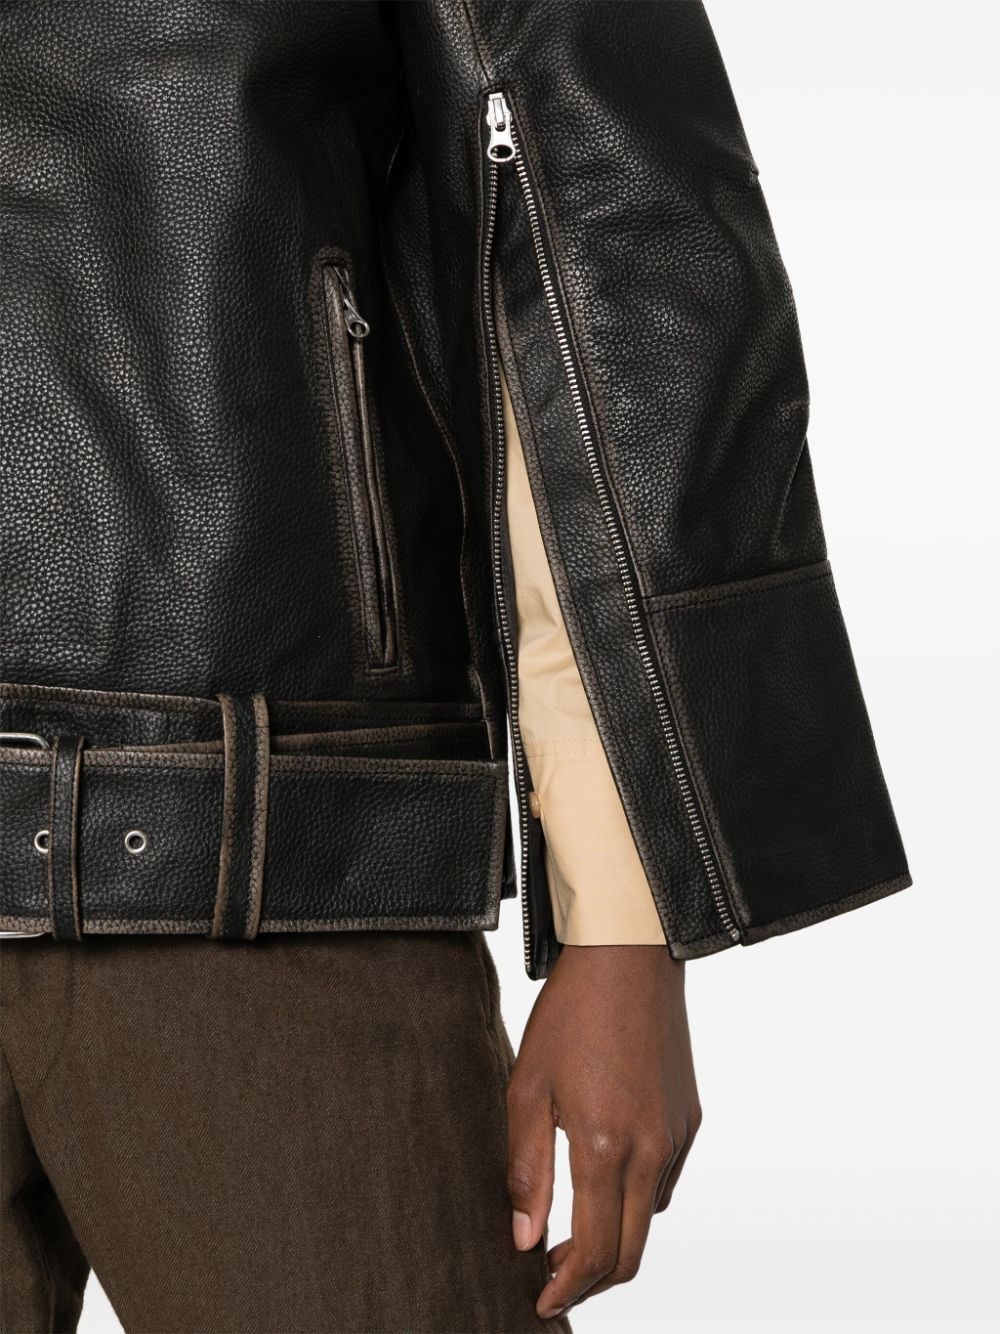 Beatrisse leather biker jacket - 5